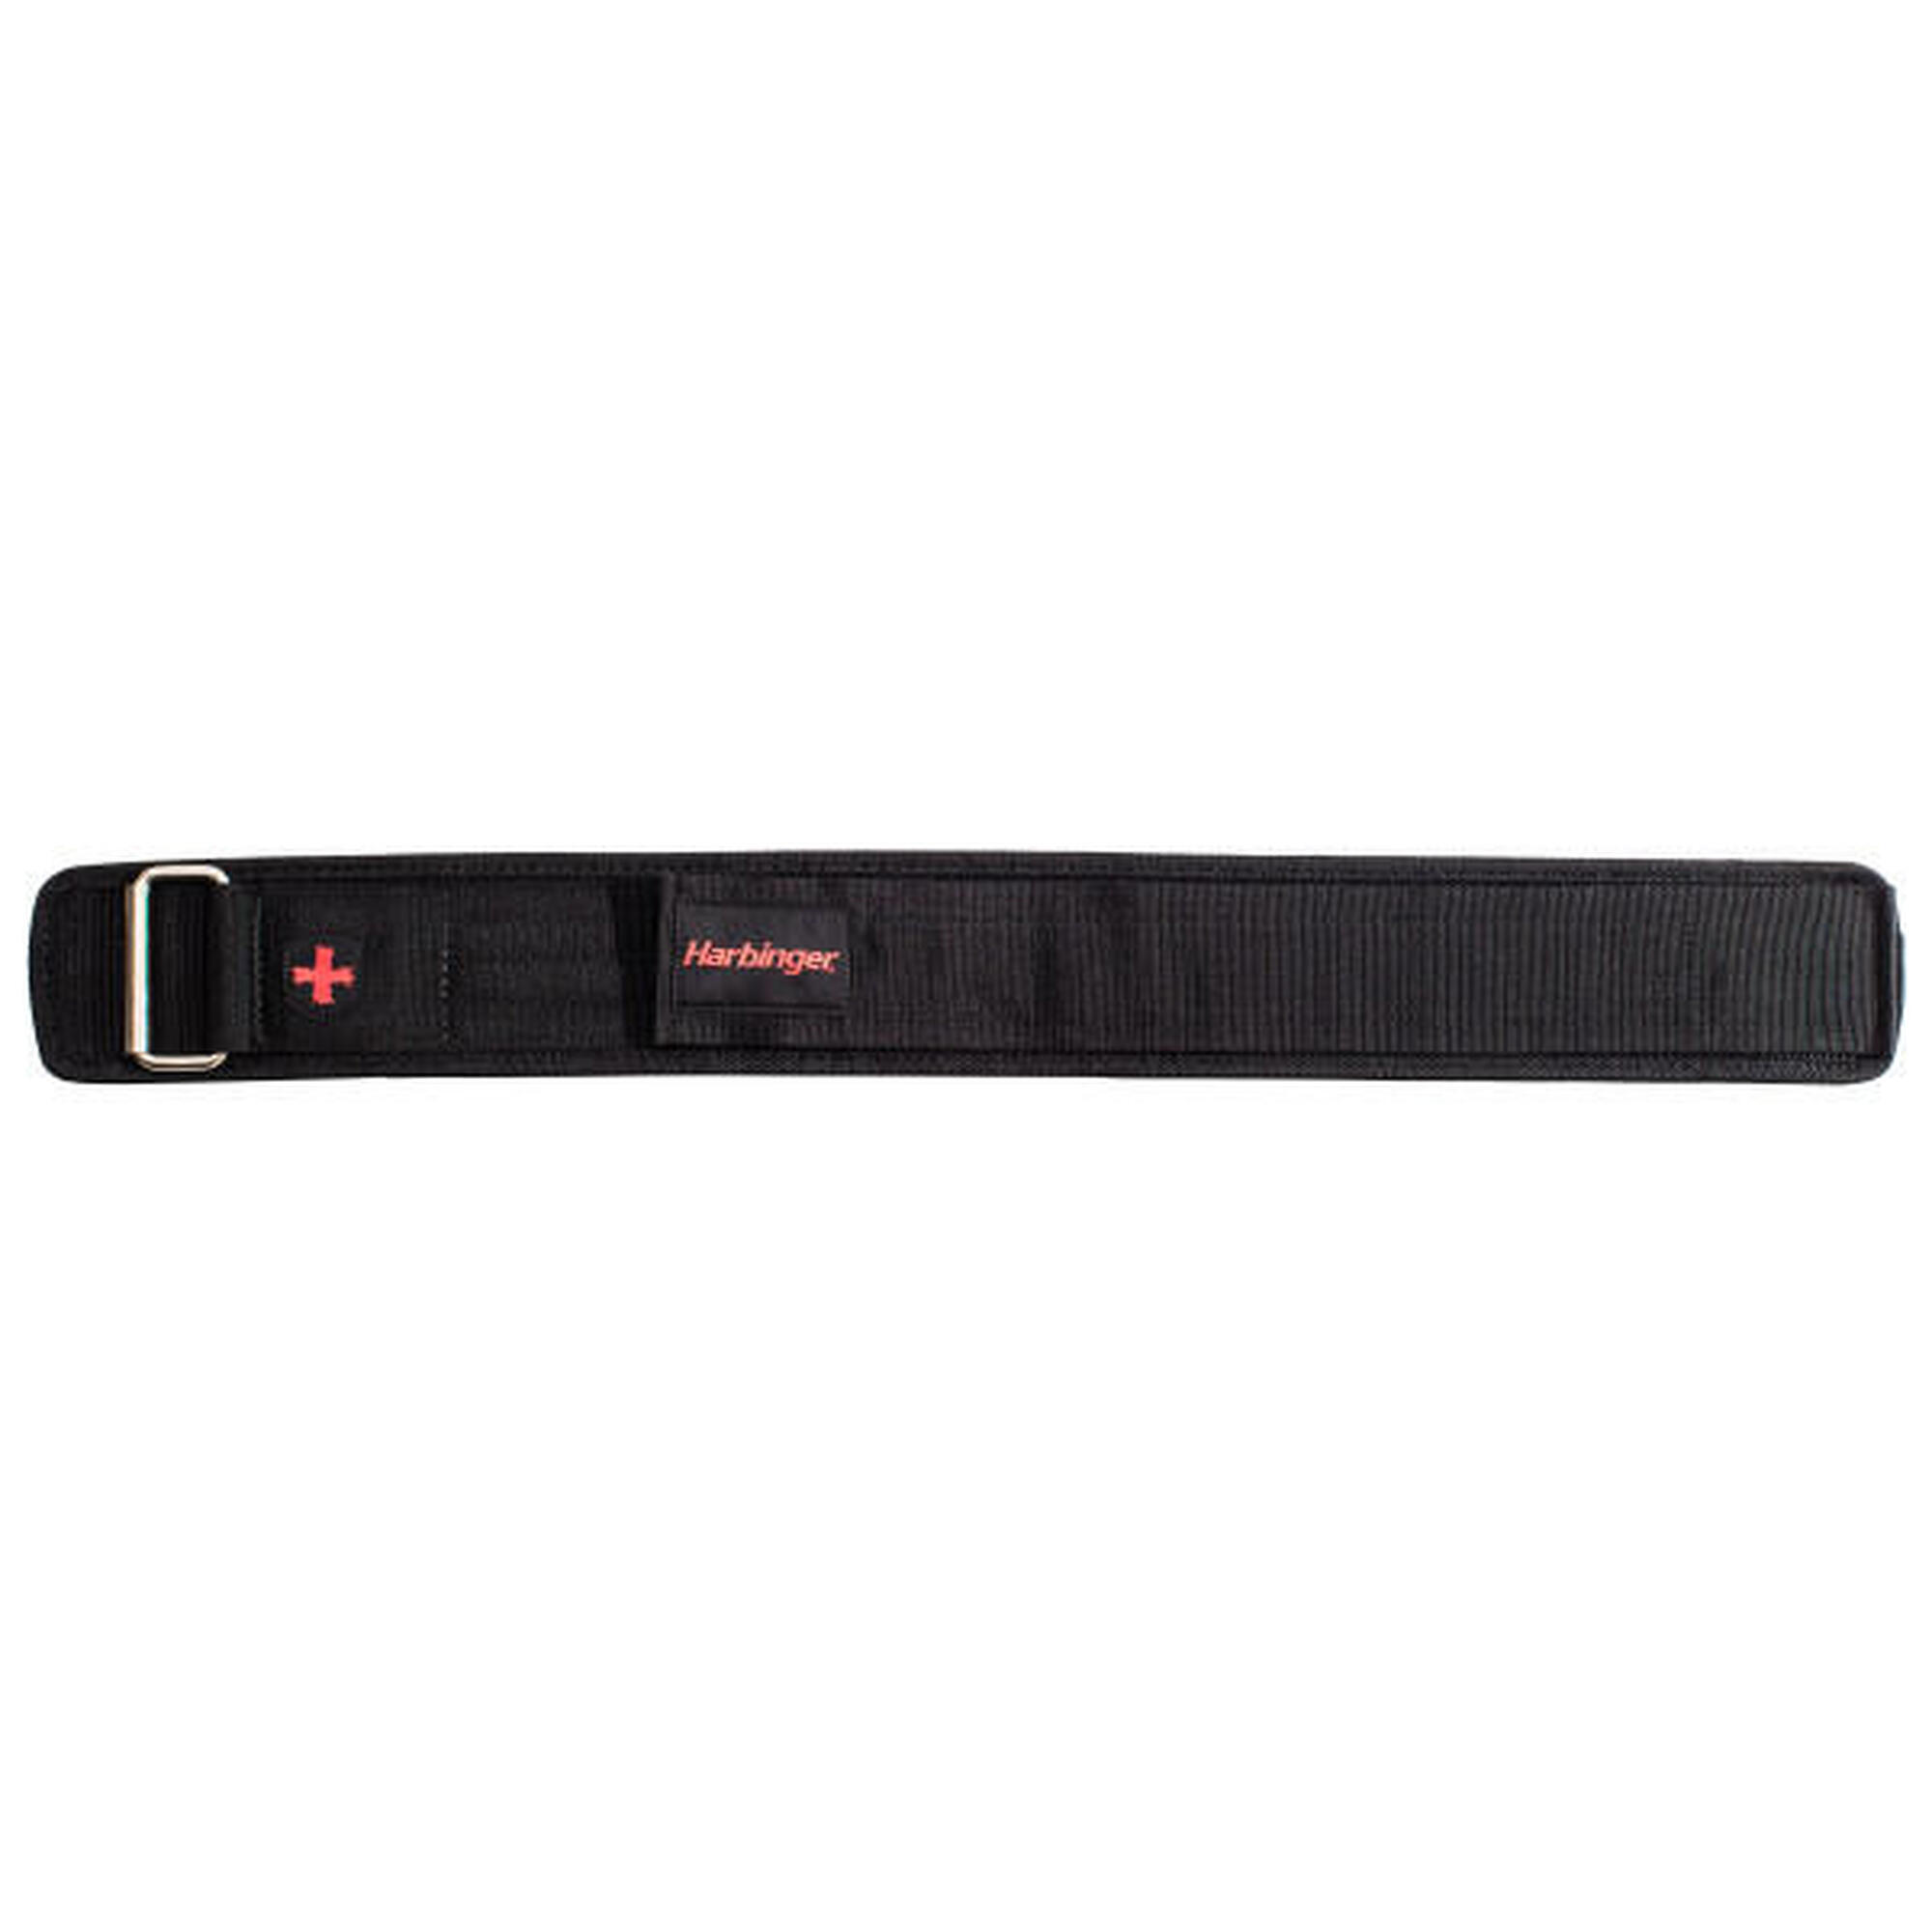 Harbinger cinturón de nylon negro para levantamiento de pesas 10,16cm talla S